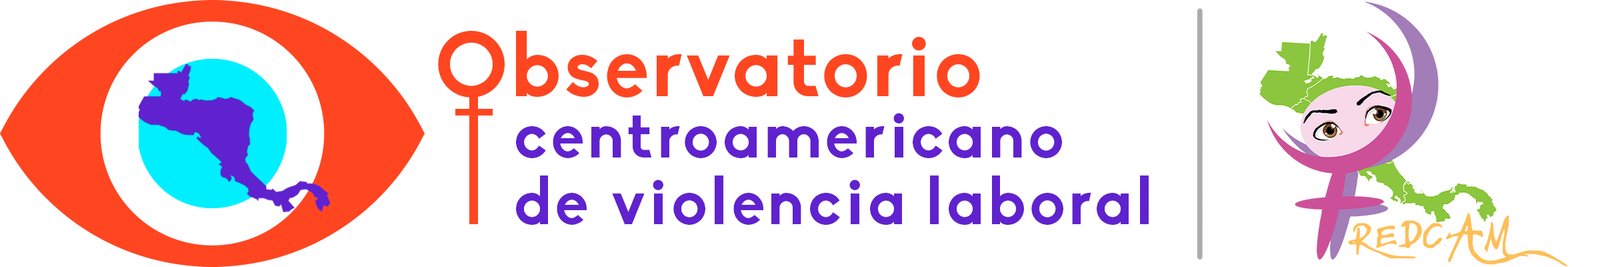 Observatorio Centroamericano de Violencia Laboral